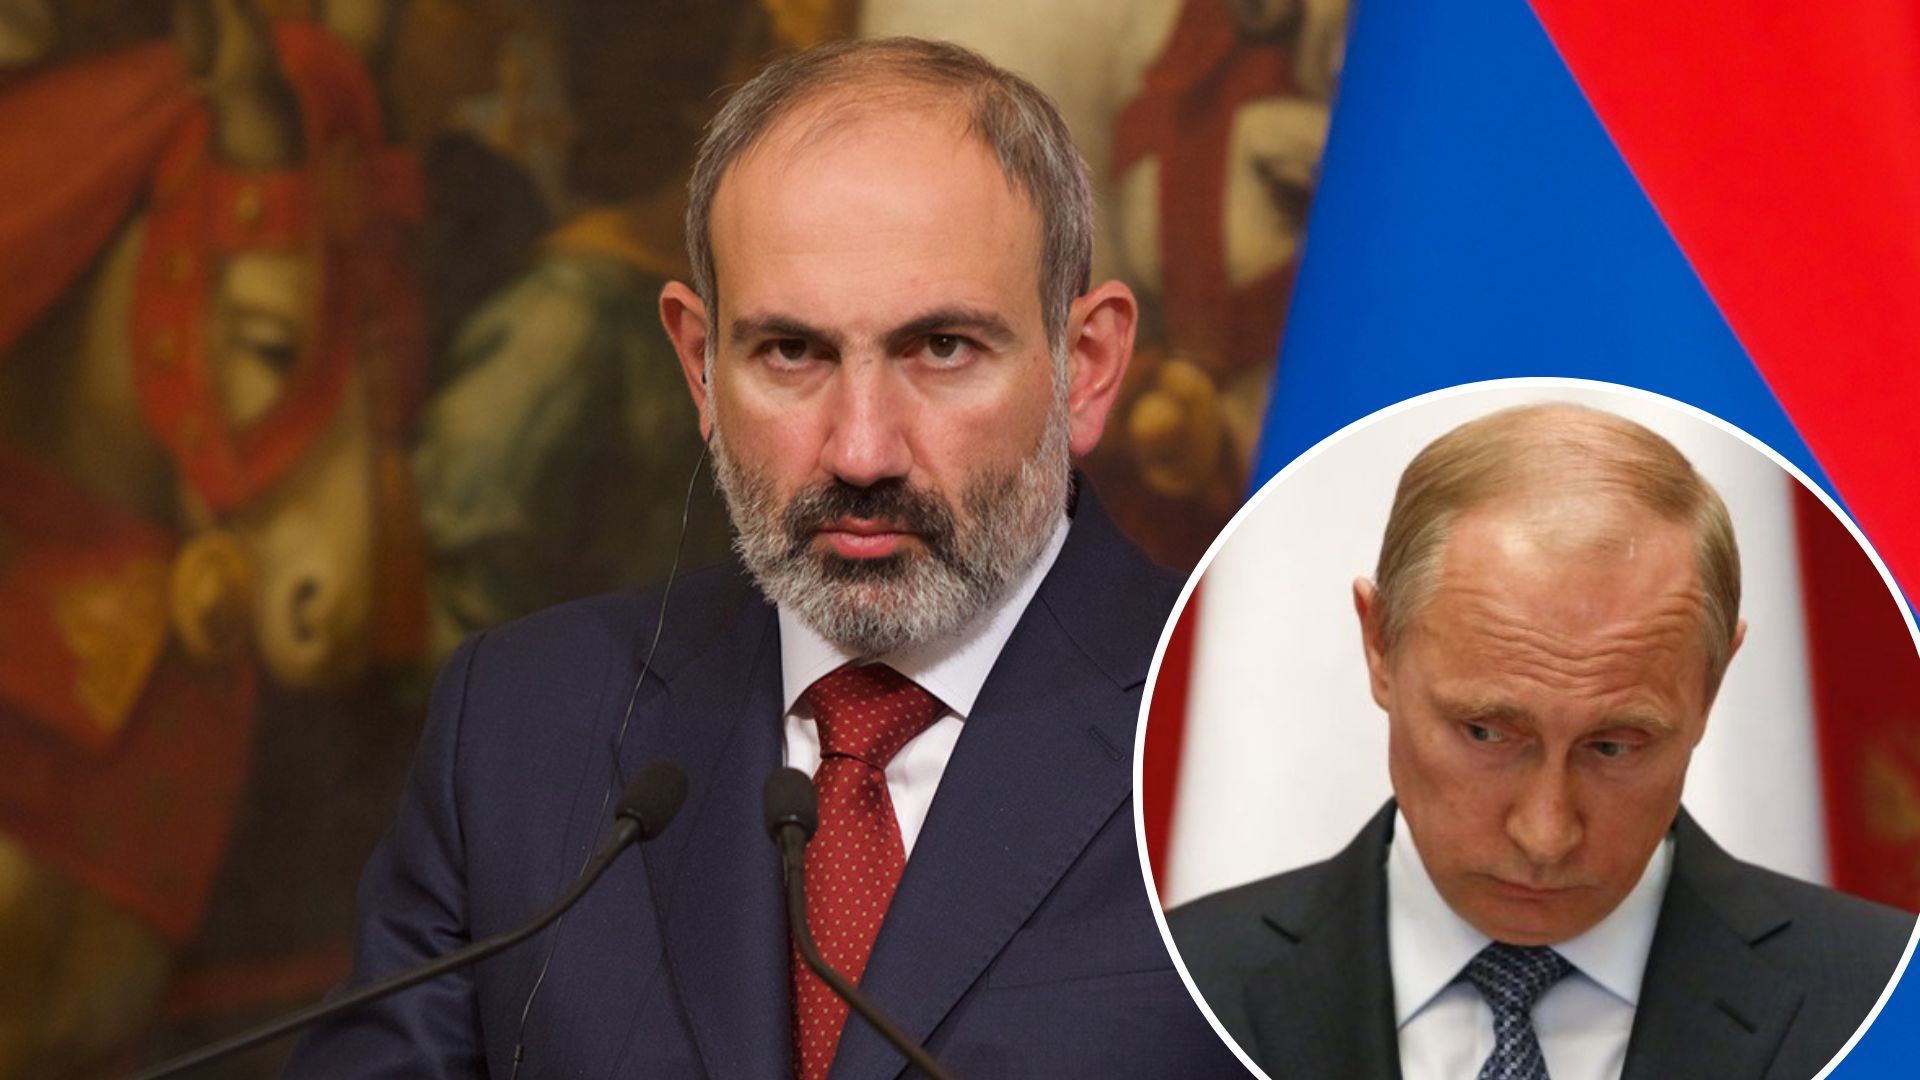 Вірменія попросила у Росії військову допомогу через конфлікт з Азербайджаном